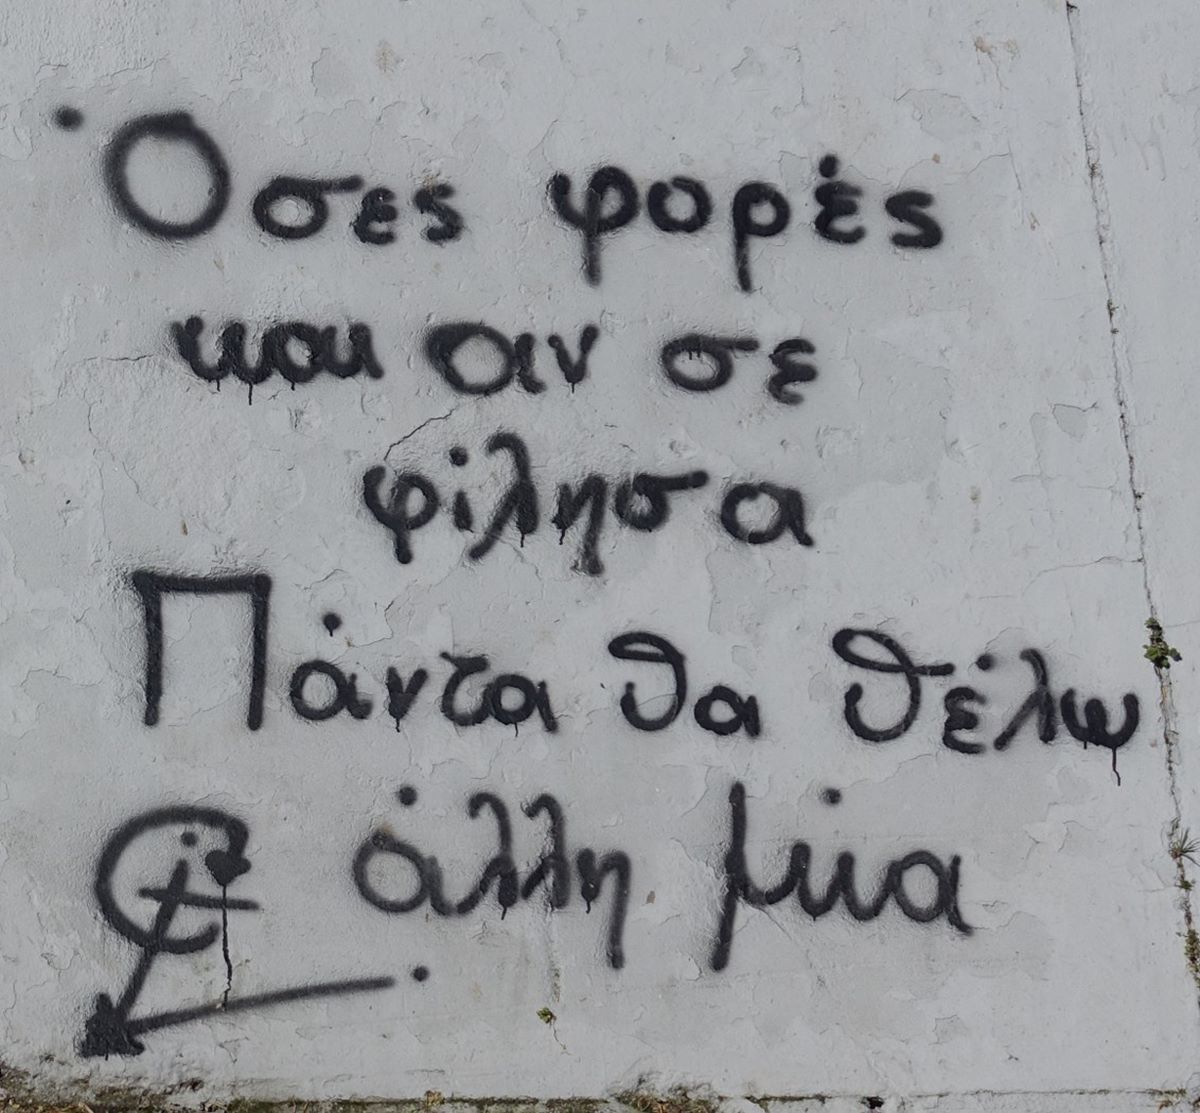 Ερωτευμένοι Λαρισαίοι εκφράζουν τον έρωτά τους με …συνθήματα στους τοίχους της πόλης  (φωτο)